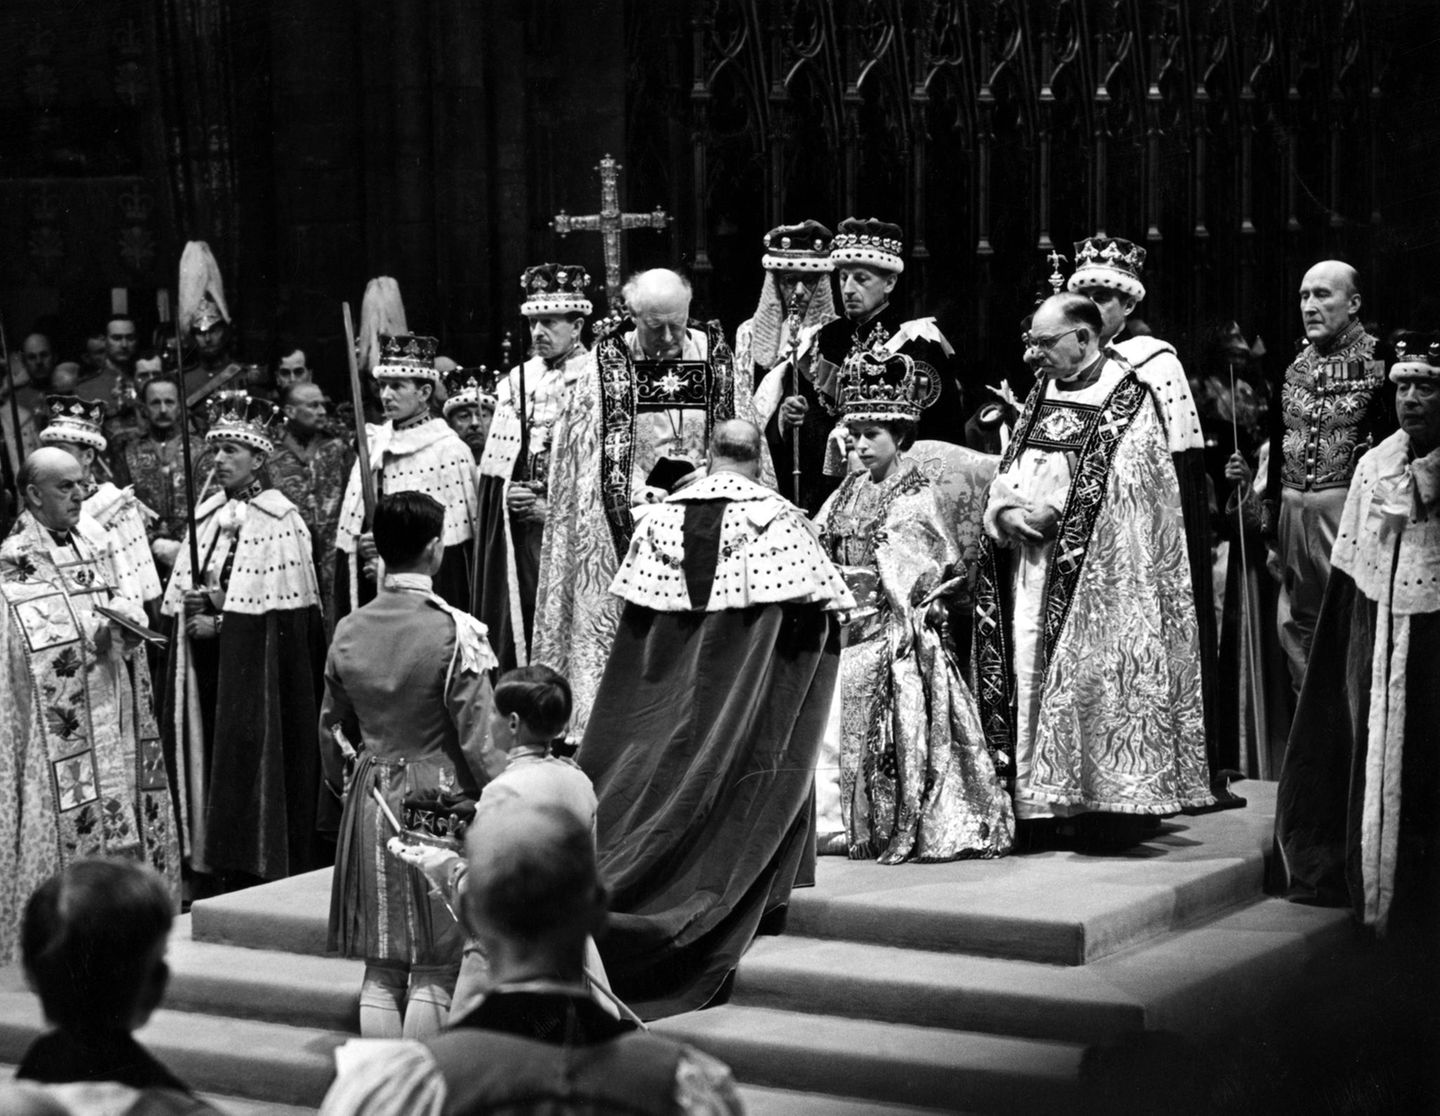 Queen Elizabeth sitzt bei der Körnung auf ihrem Thron.